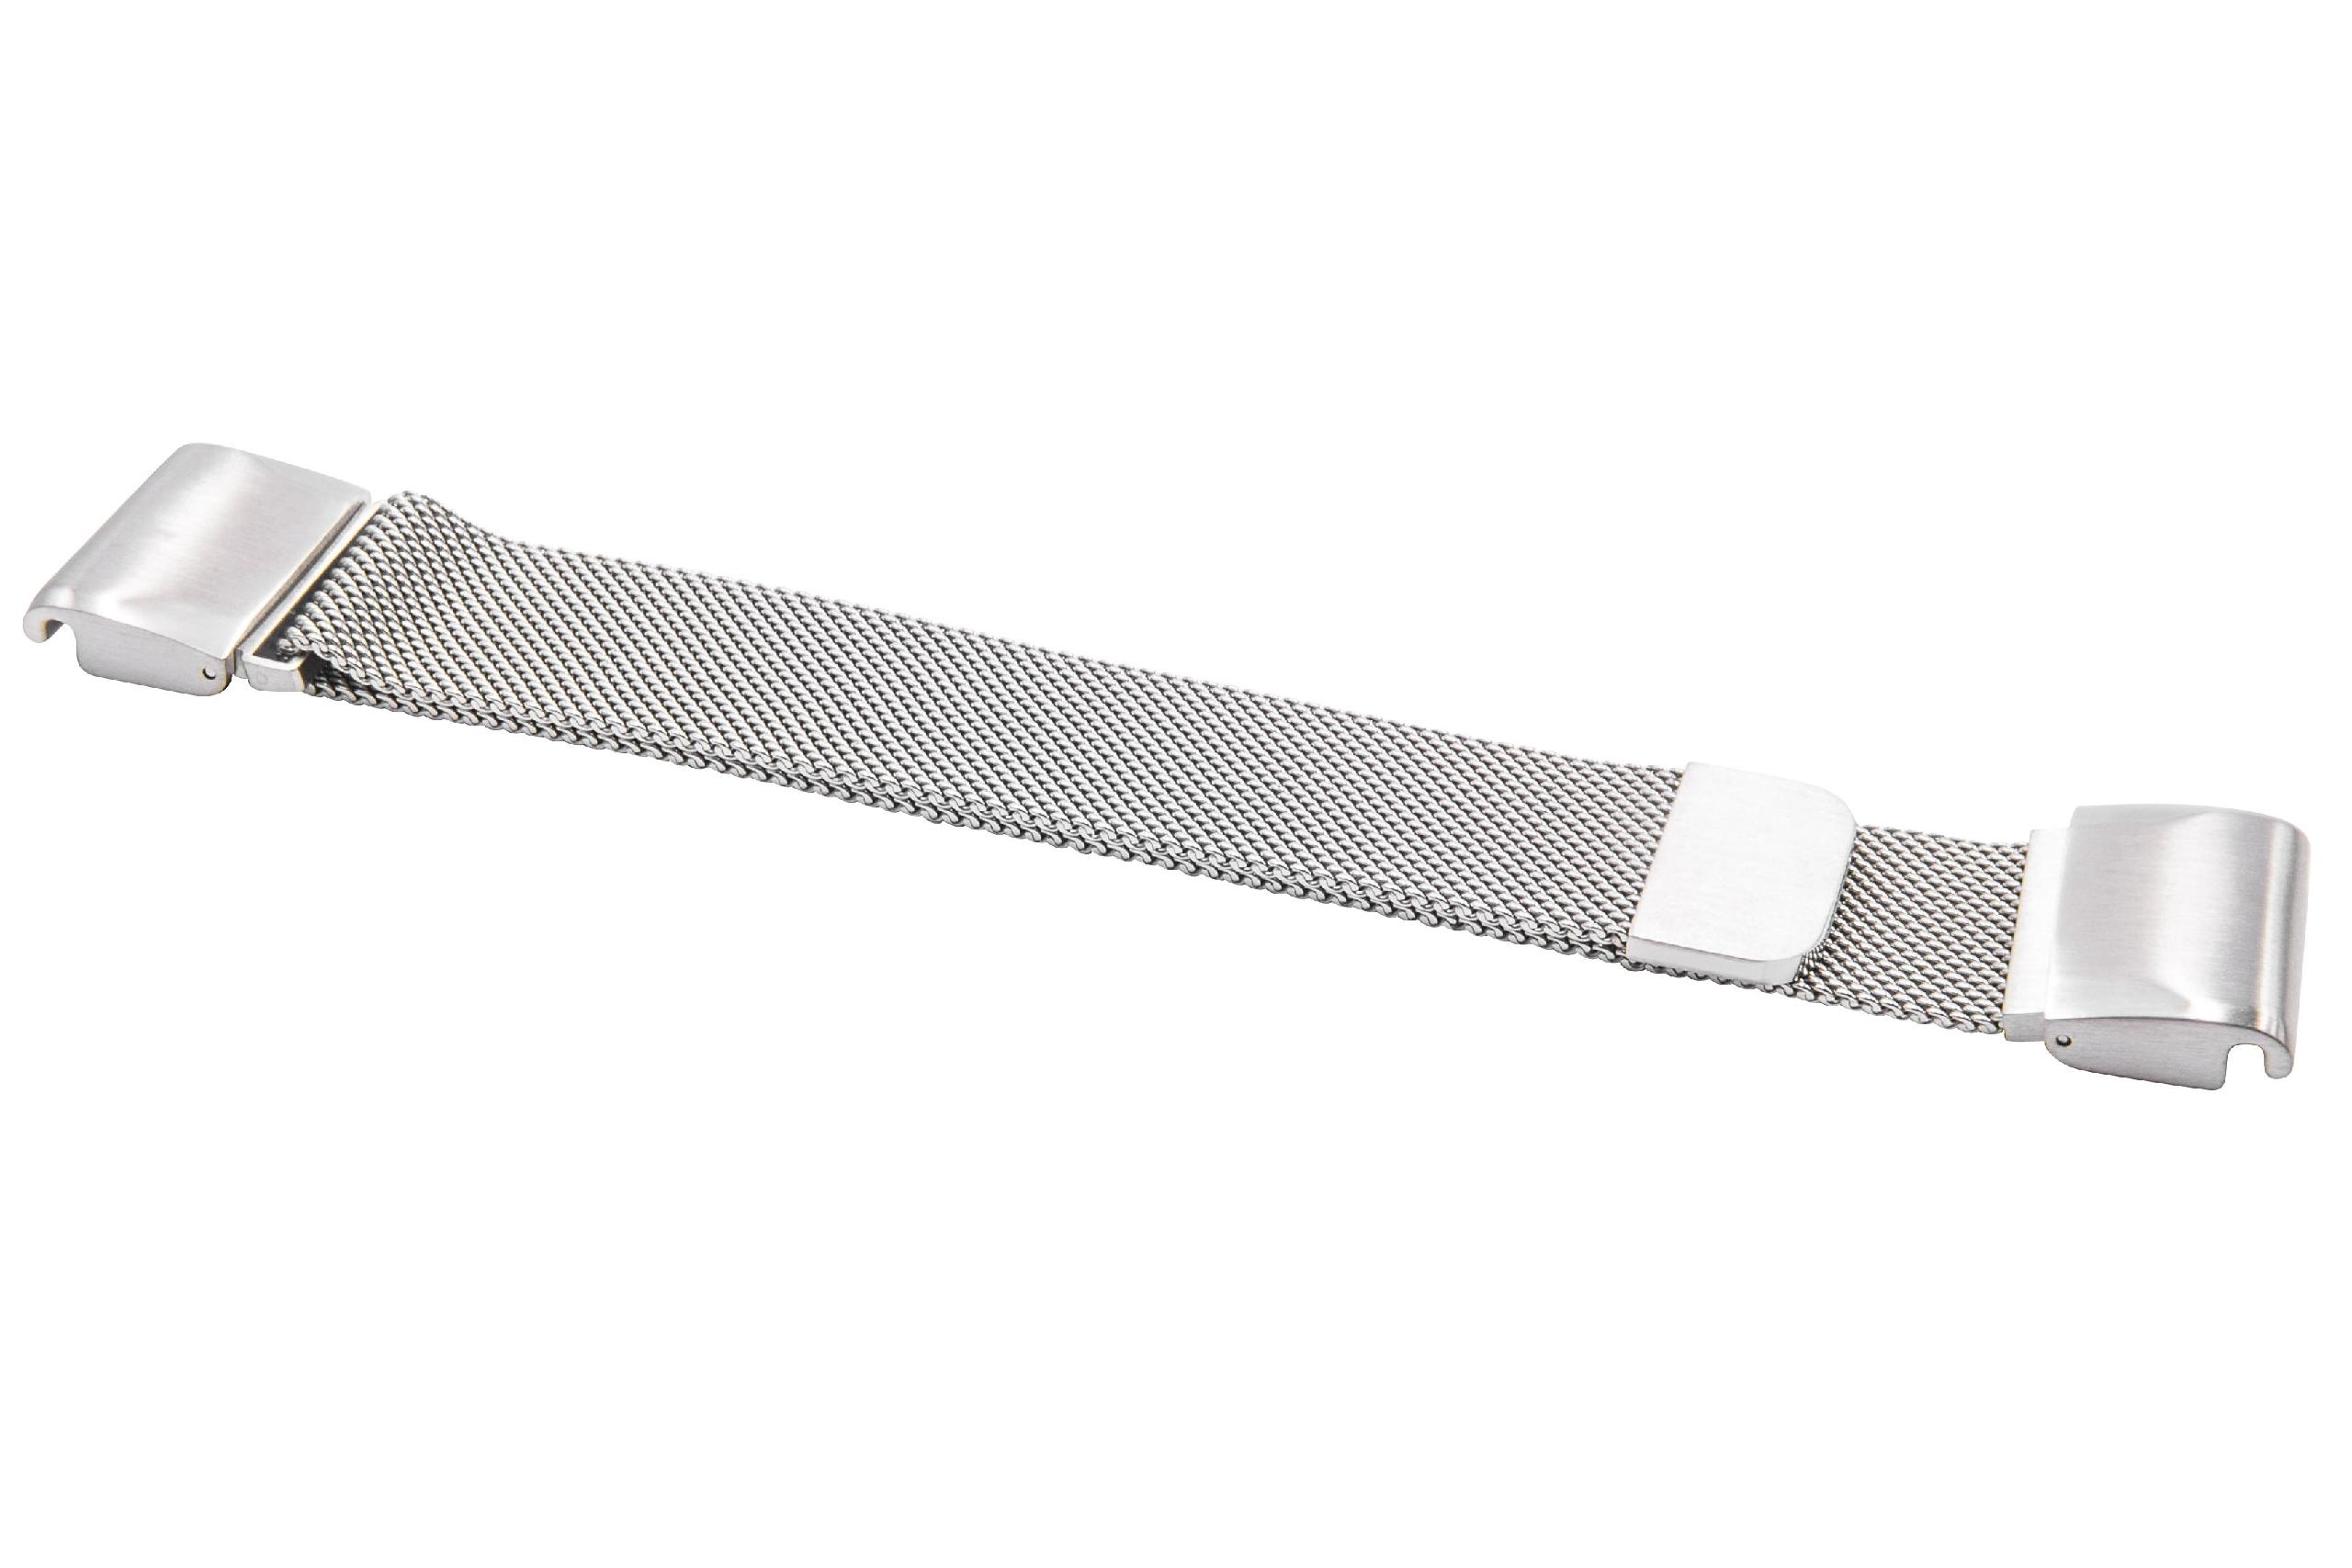 cinturino per Garmin Quatix Smartwatch ecc - fino a 248 mm circonferenza del polso, acciaio inox, argento